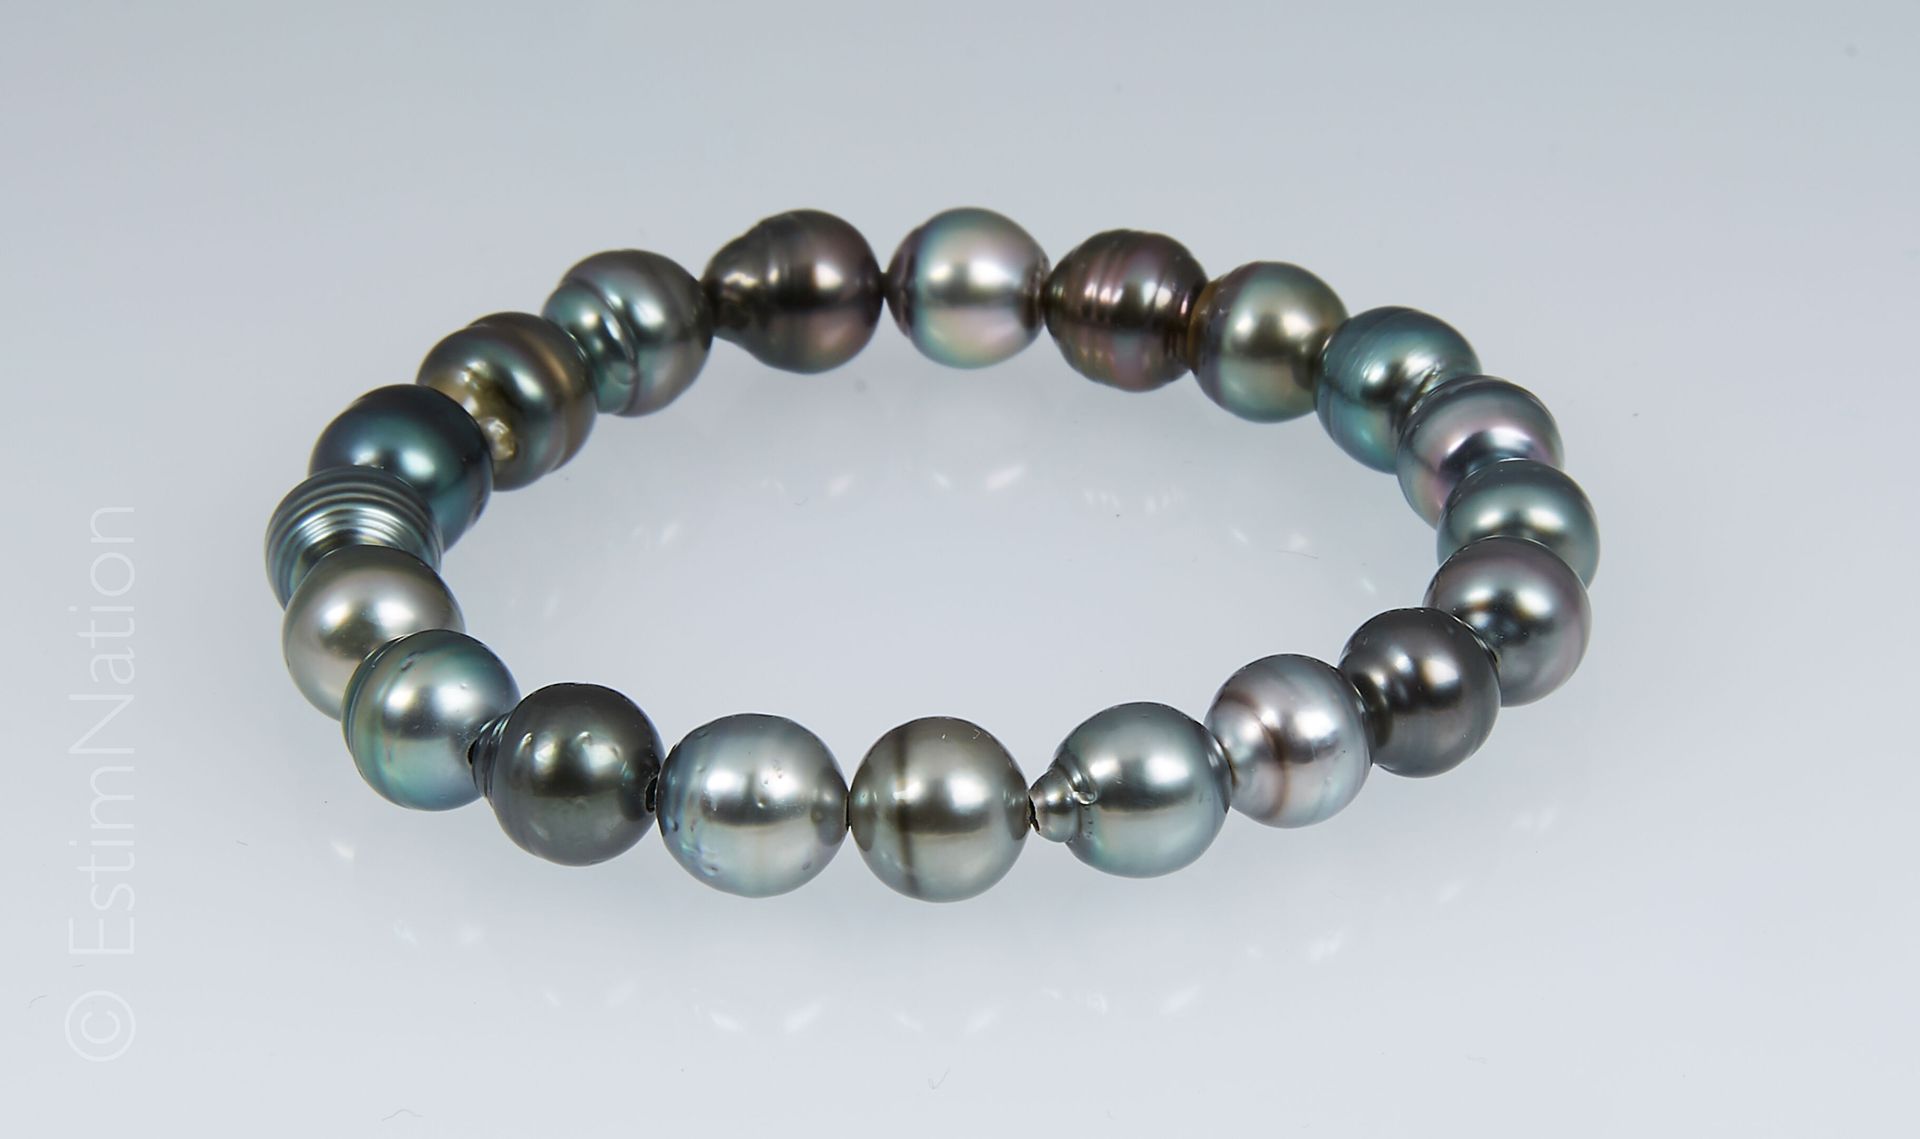 BRACELET PERLES TAHITI 由20颗大溪地珍珠组成的手链，安装在弹性上。

珍珠的直径：8.2毫米左右